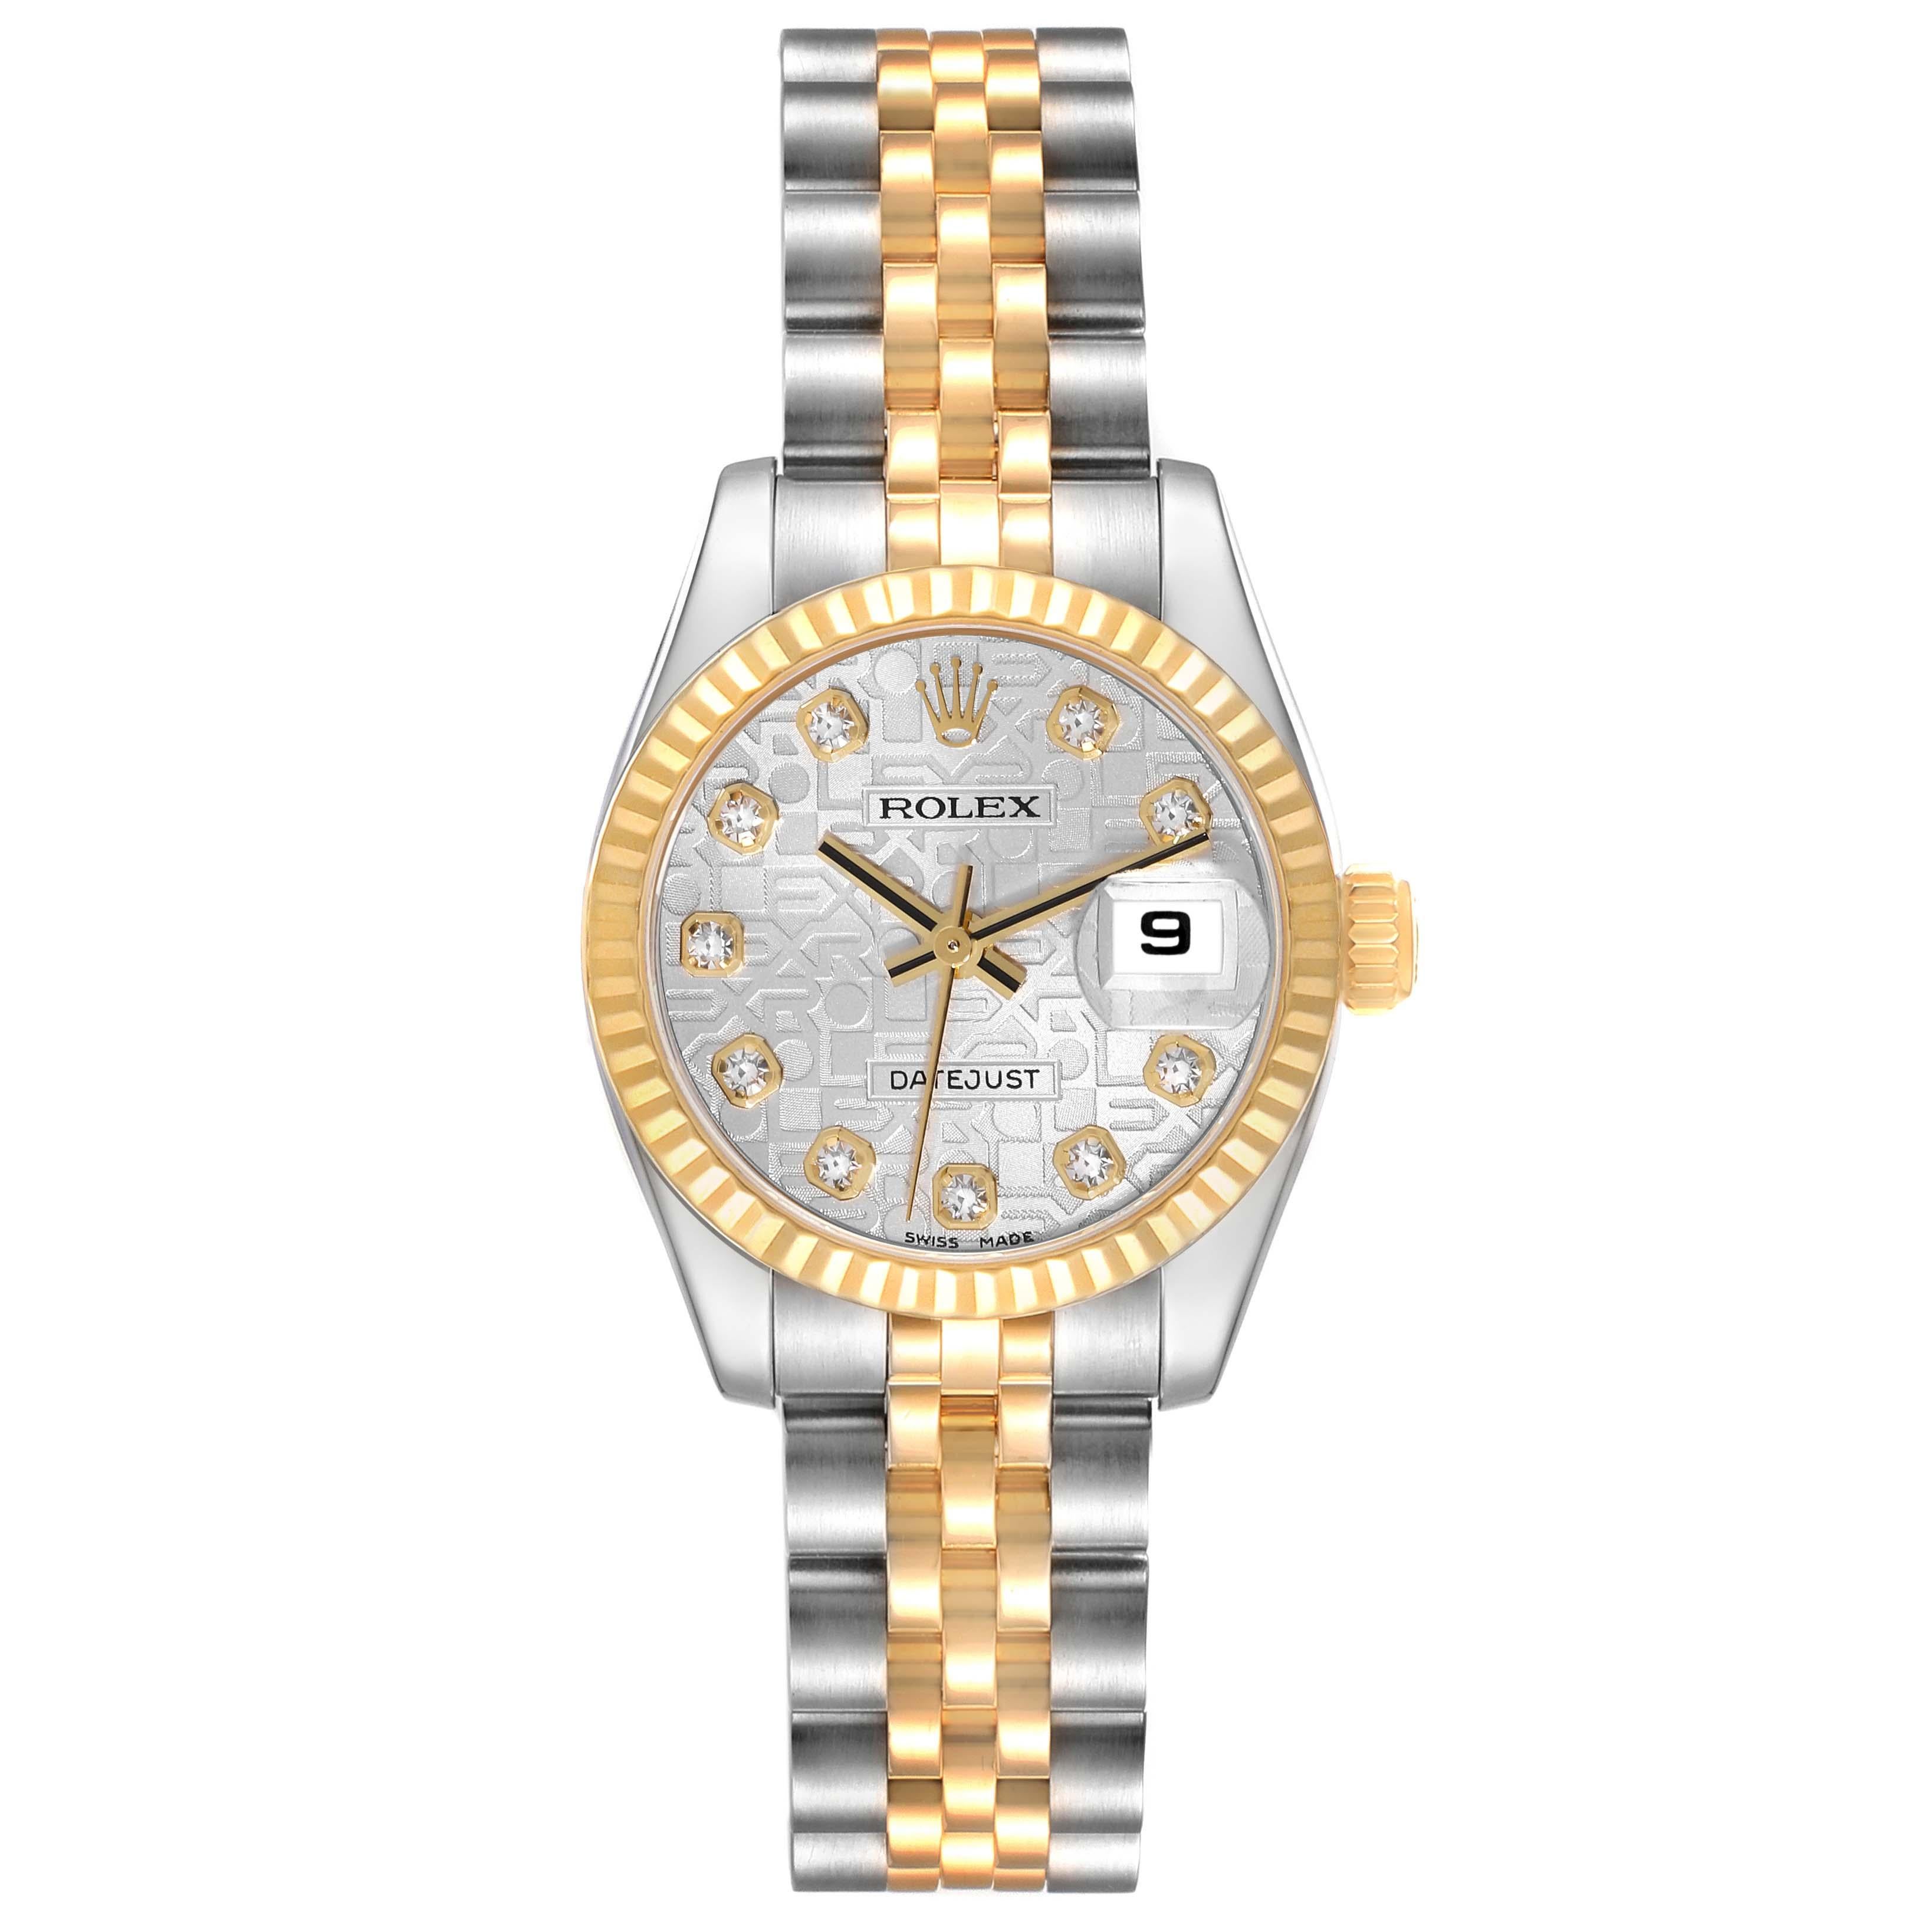 Rolex Datejust Steel Yellow Gold Anniversary Diamond Dial Ladies Watch 179173. Mouvement à remontage automatique certifié officiellement chronomètre. Boîtier oyster en acier inoxydable de 26 mm de diamètre. Logo Rolex sur une couronne en or jaune 18